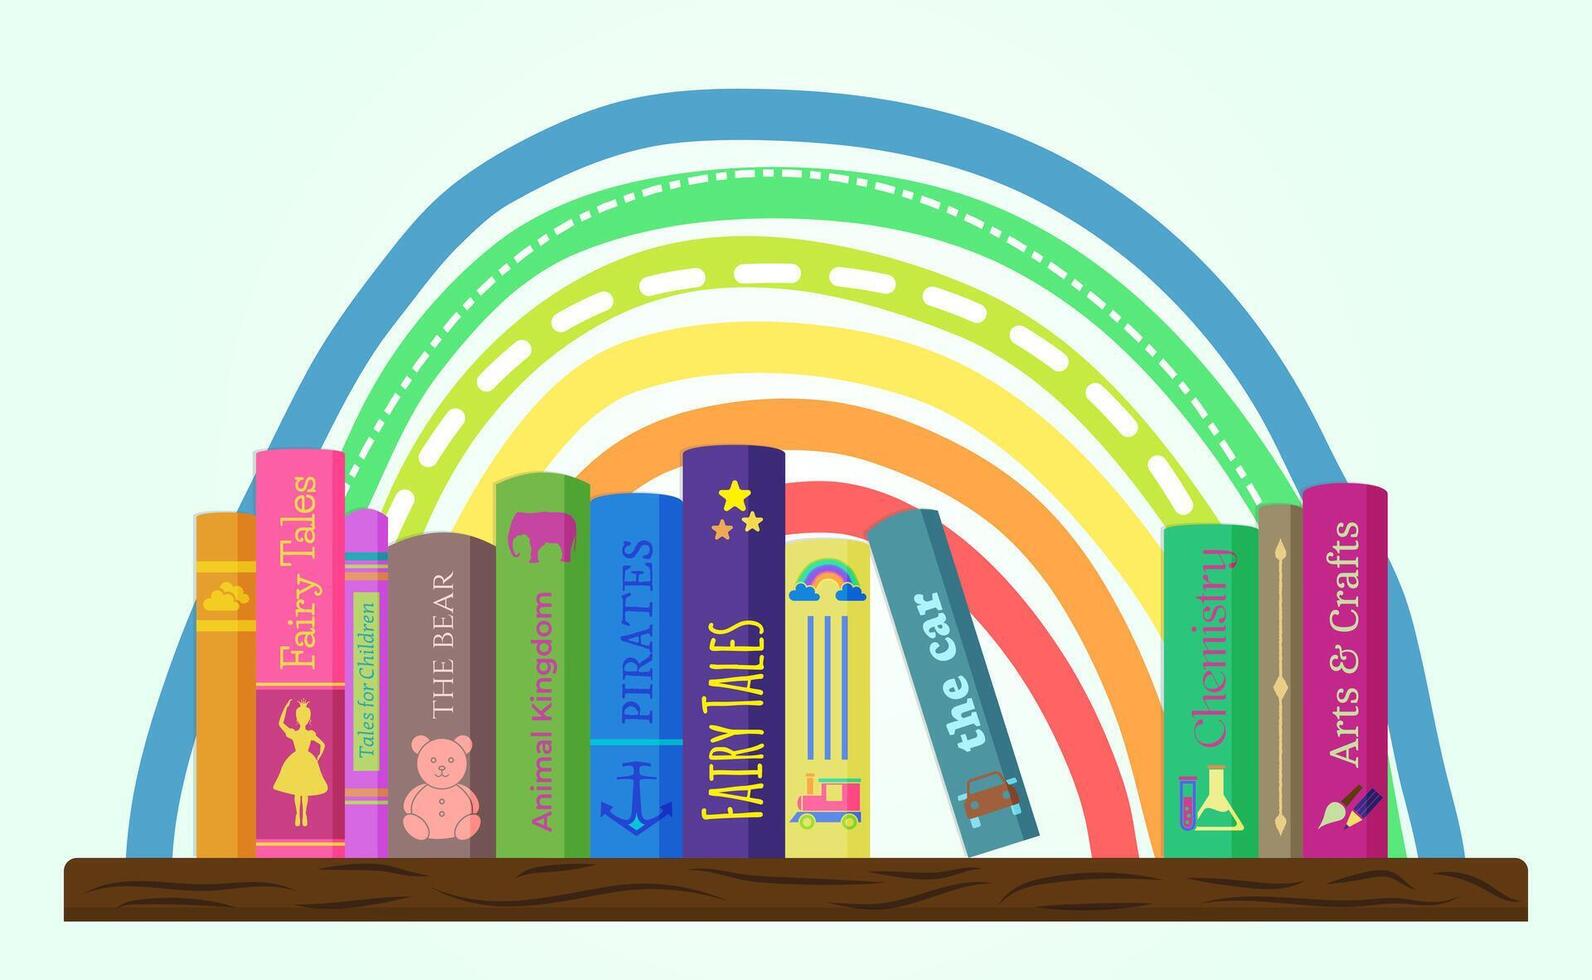 grappig boek illustratie ontwerp voor kinderen met regenboog. kinderen boekenplank of boekenkast met boeken banier achtergrond vector